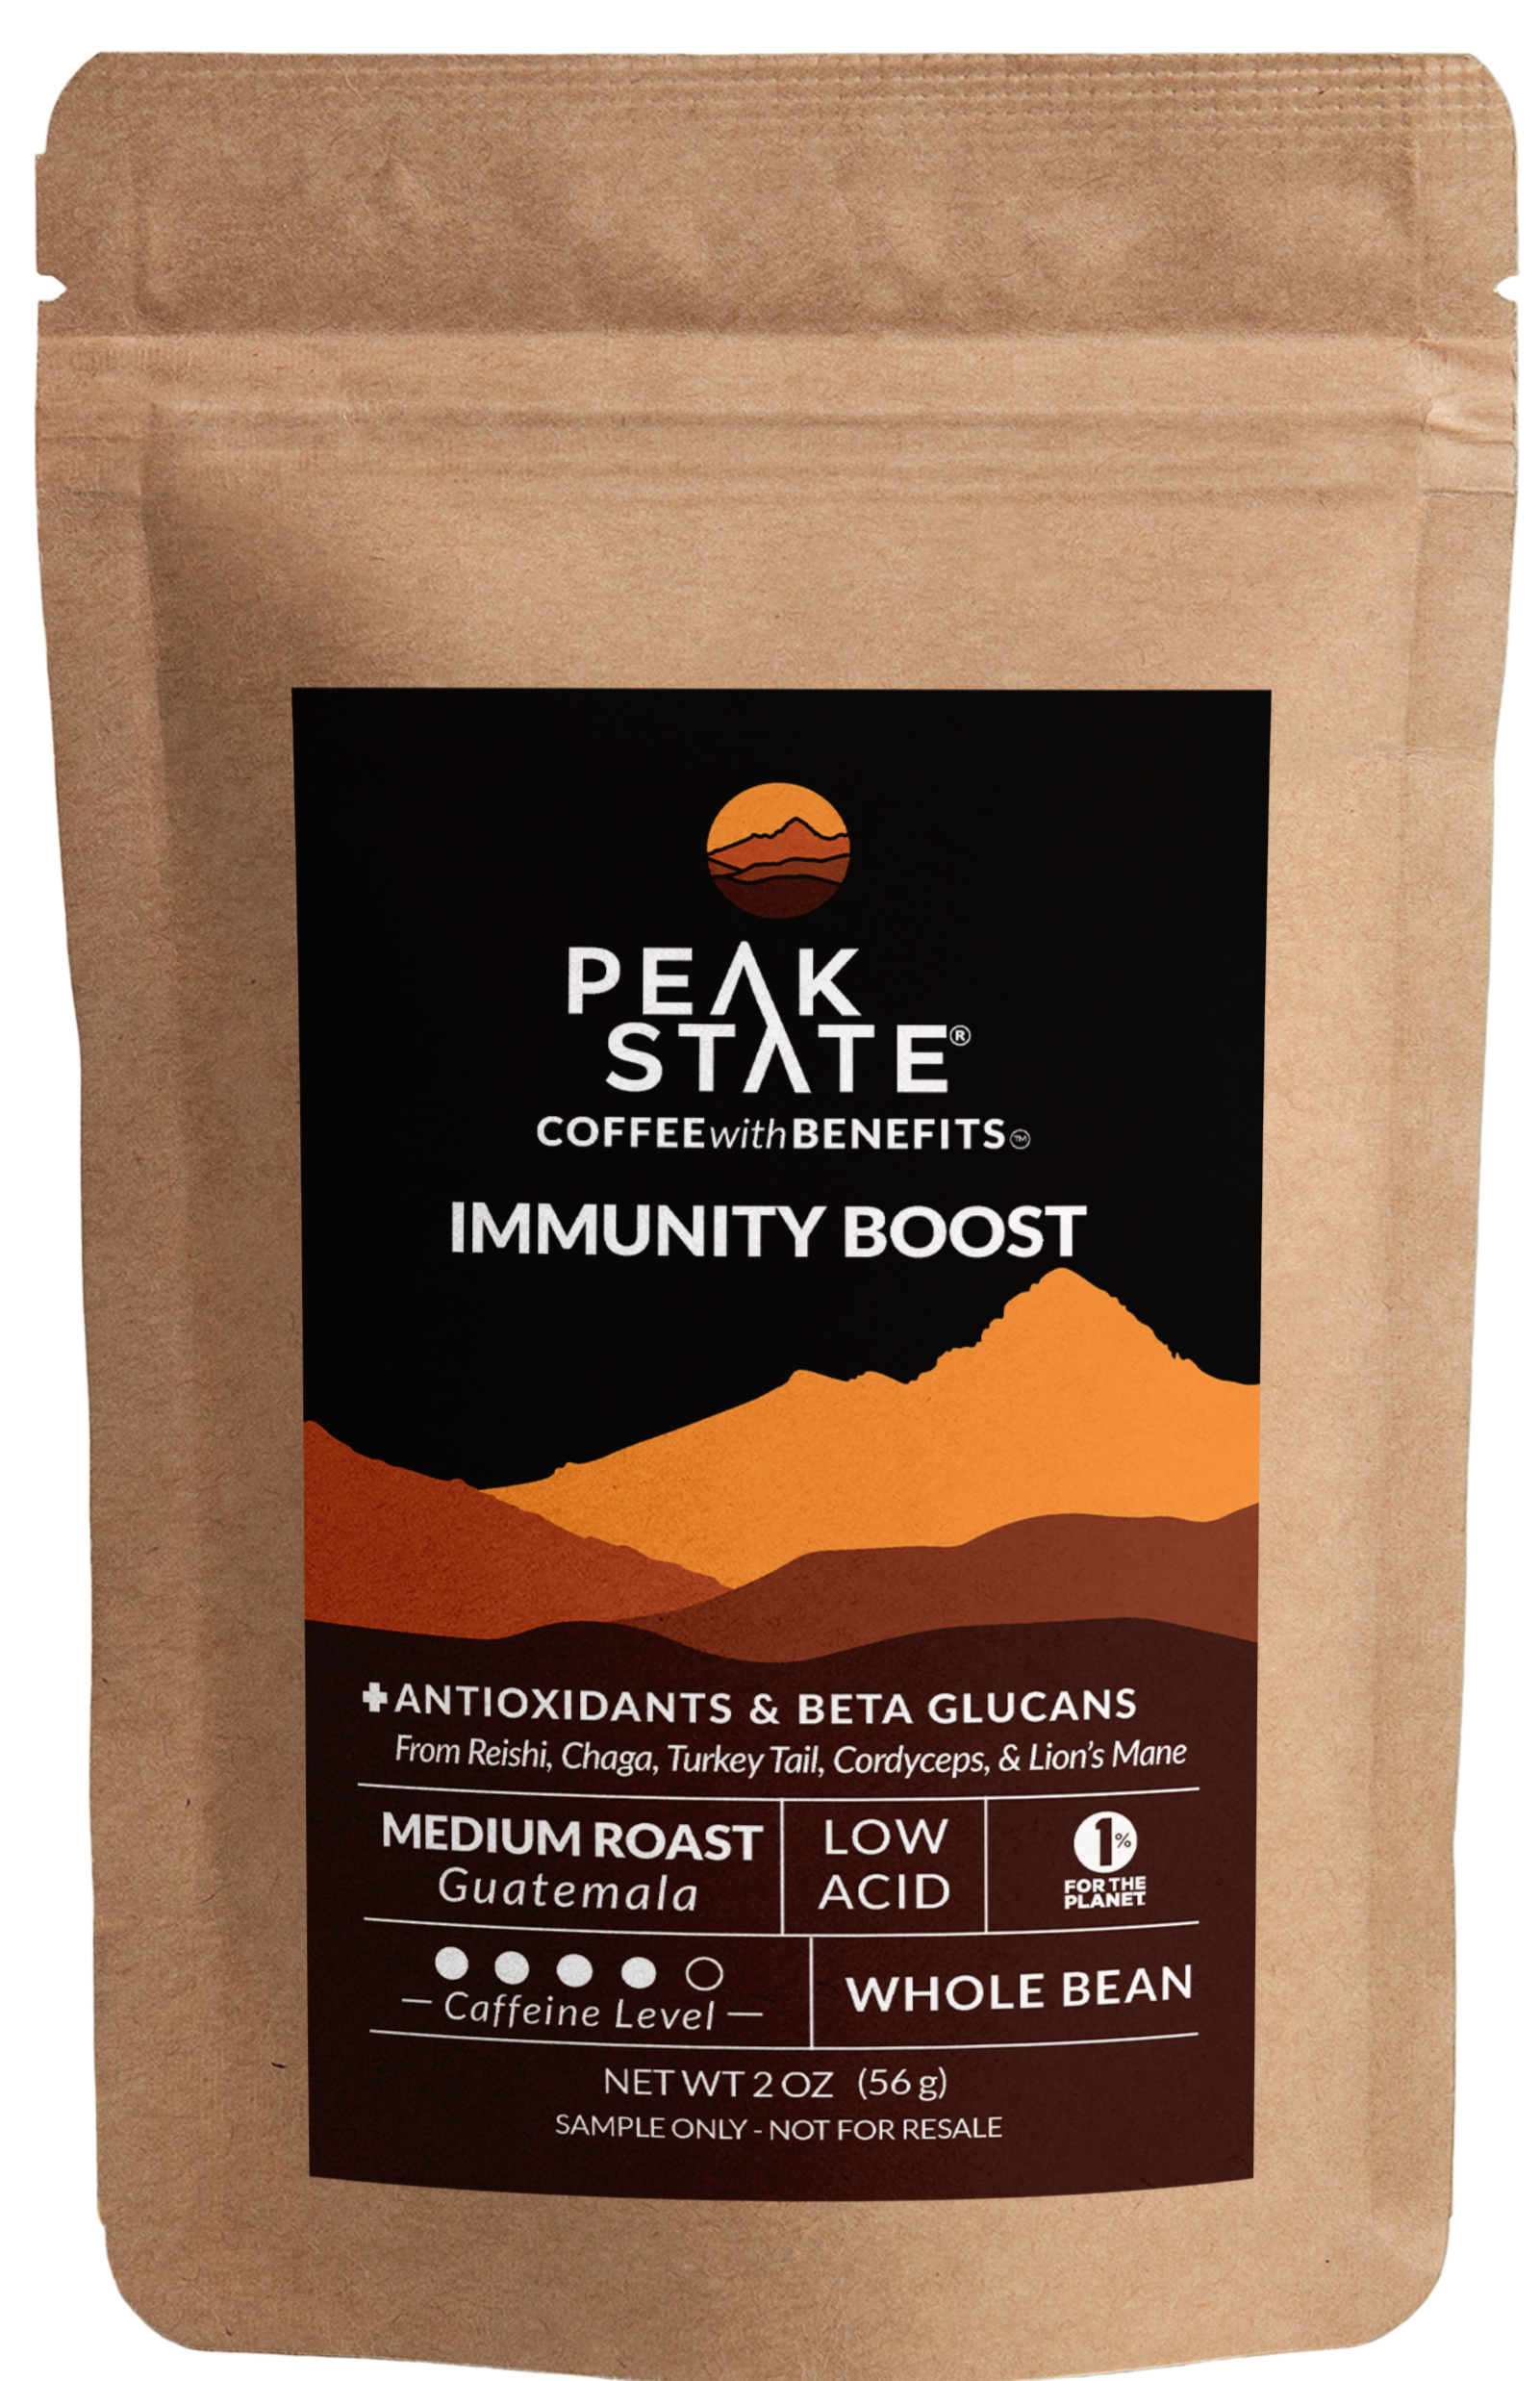 2oz sample bag of Peak State's Immunity Boost medium roast coffee. 